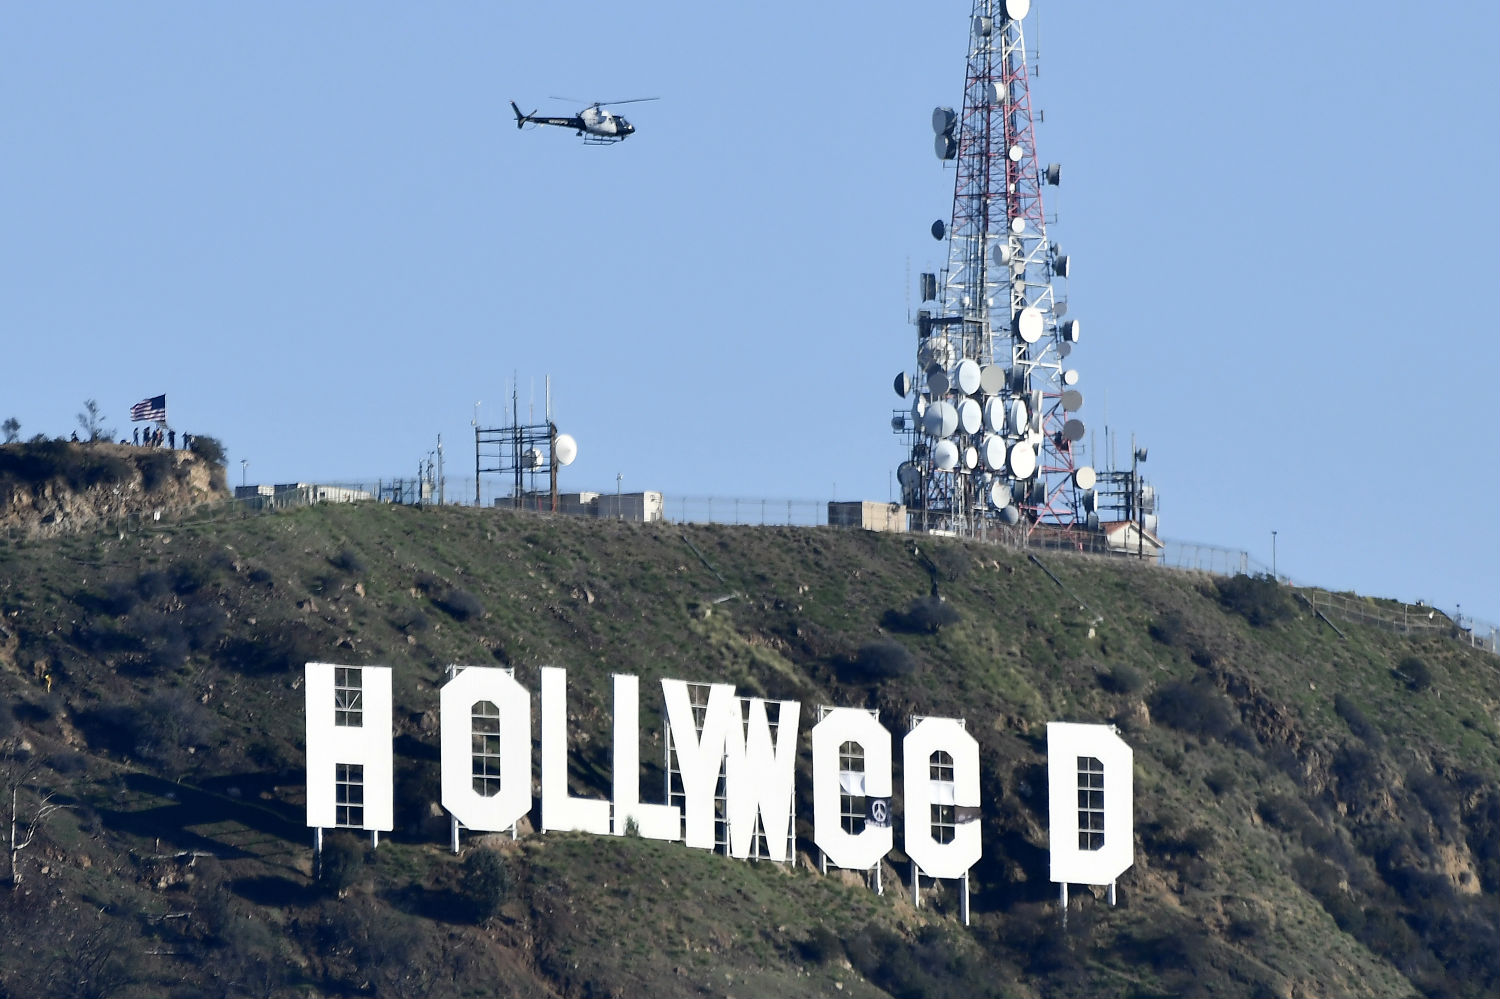 Alteran el letrero ‘Hollywood’ para celebrar la legalización del cannabis